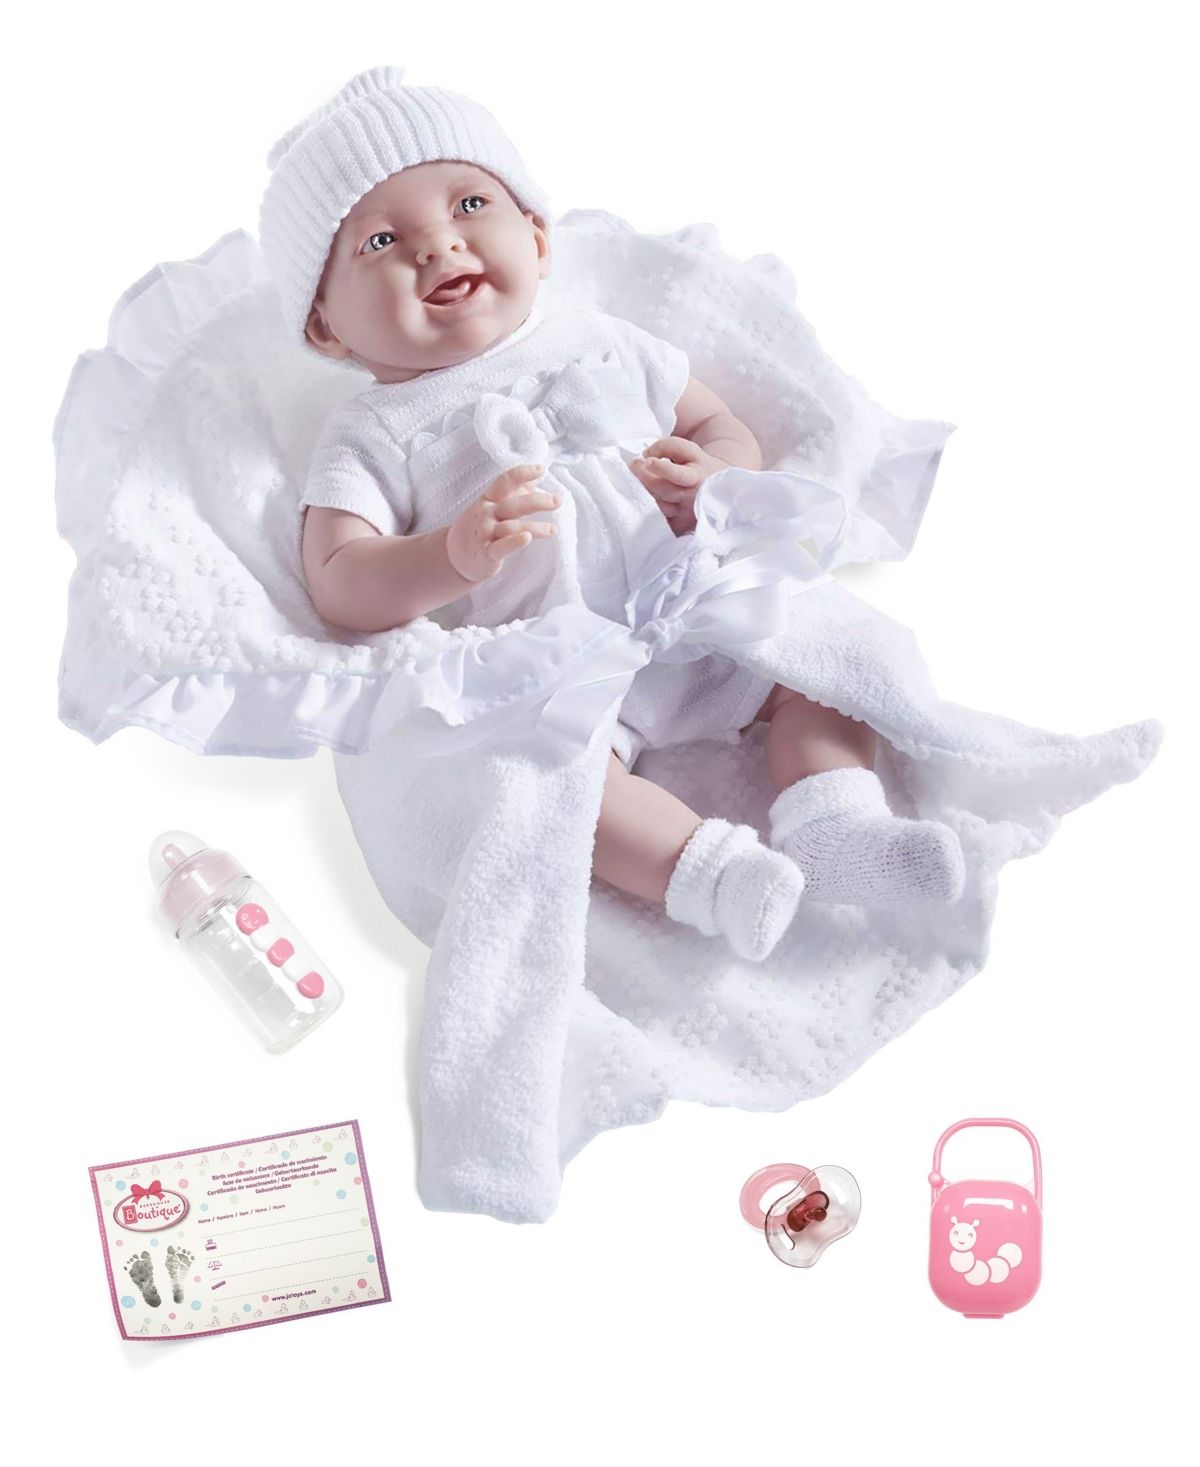 La Newborn Nursery 15.5" Soft Body Baby Doll White Outfit | Macys (US)